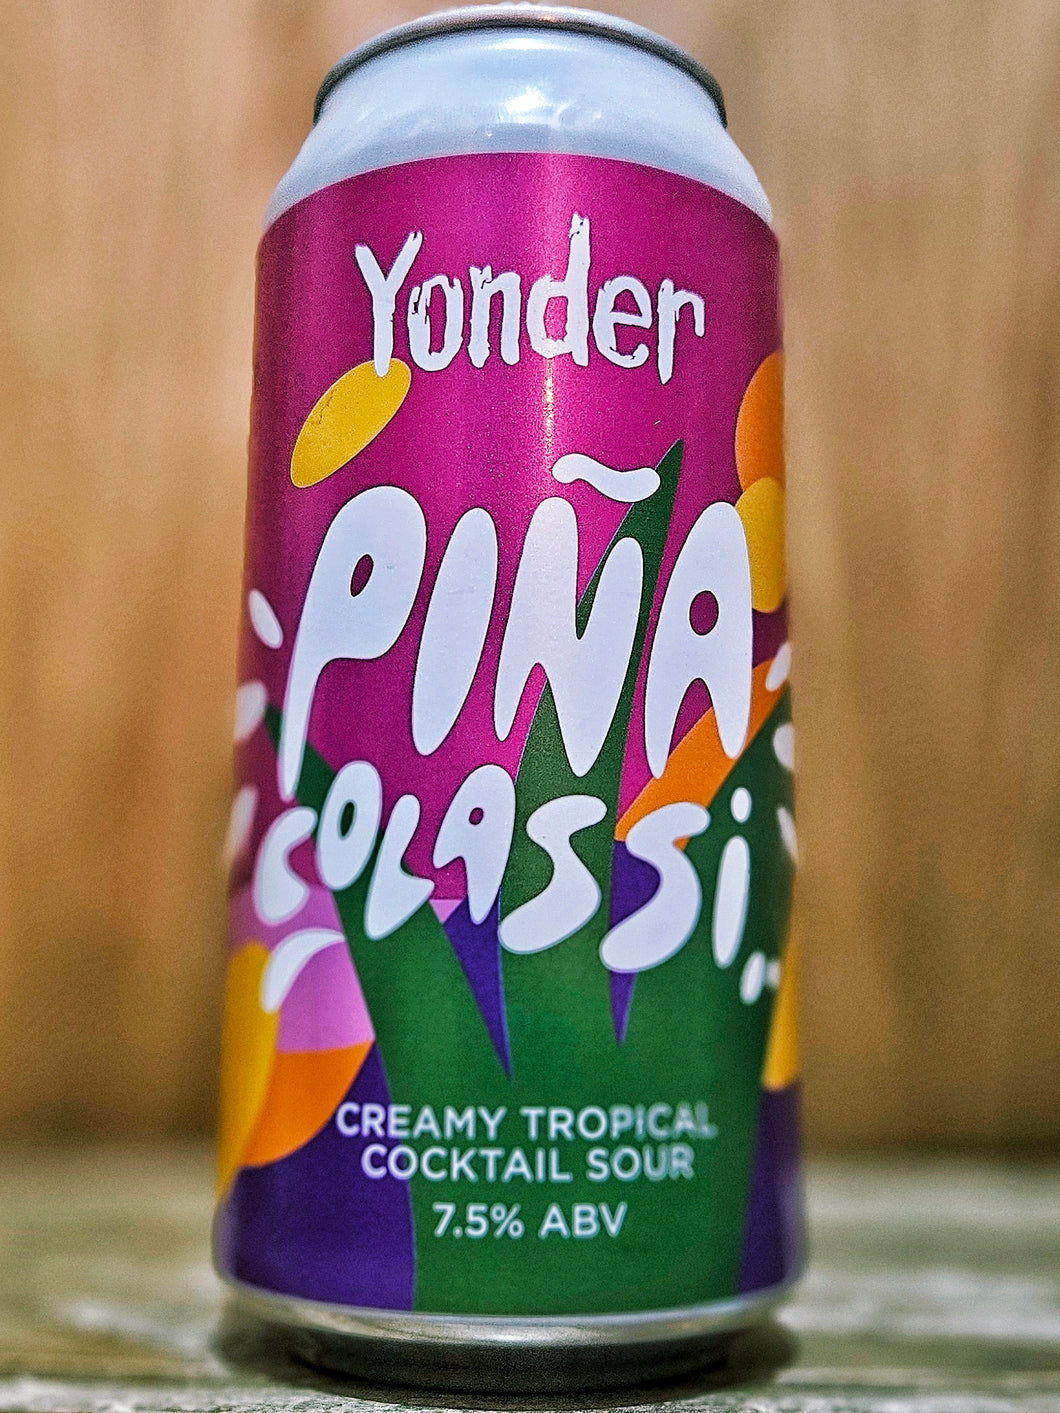 Yonder Brewing - Pina Colassi